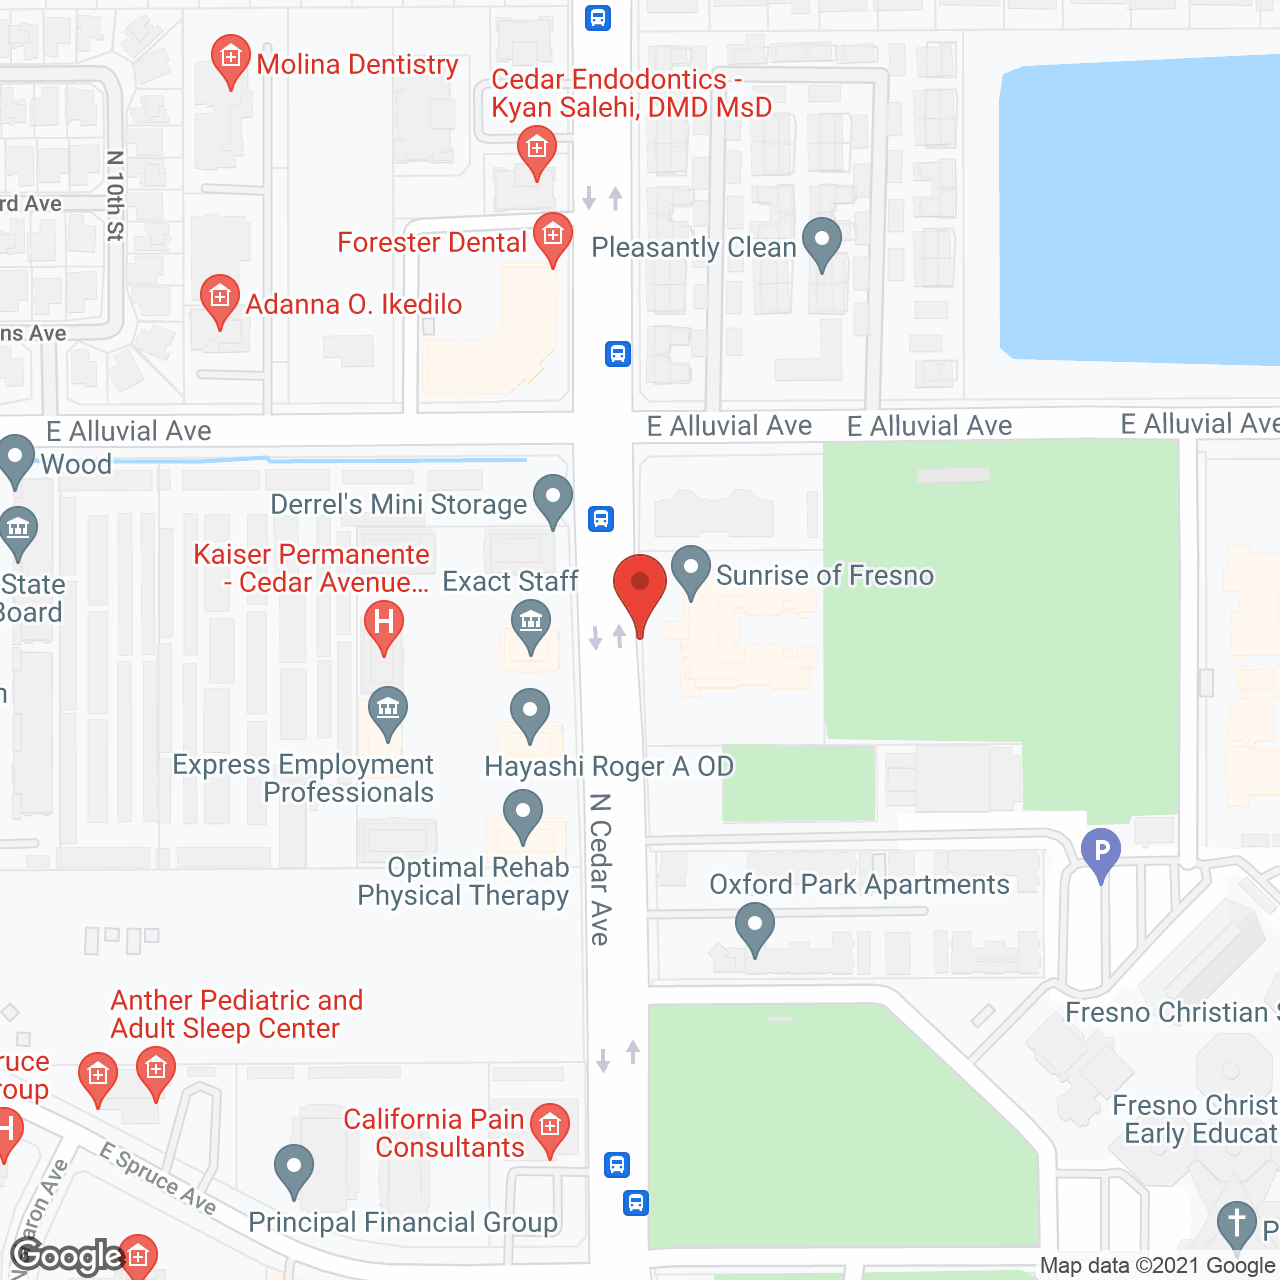 Sunrise of Fresno in google map